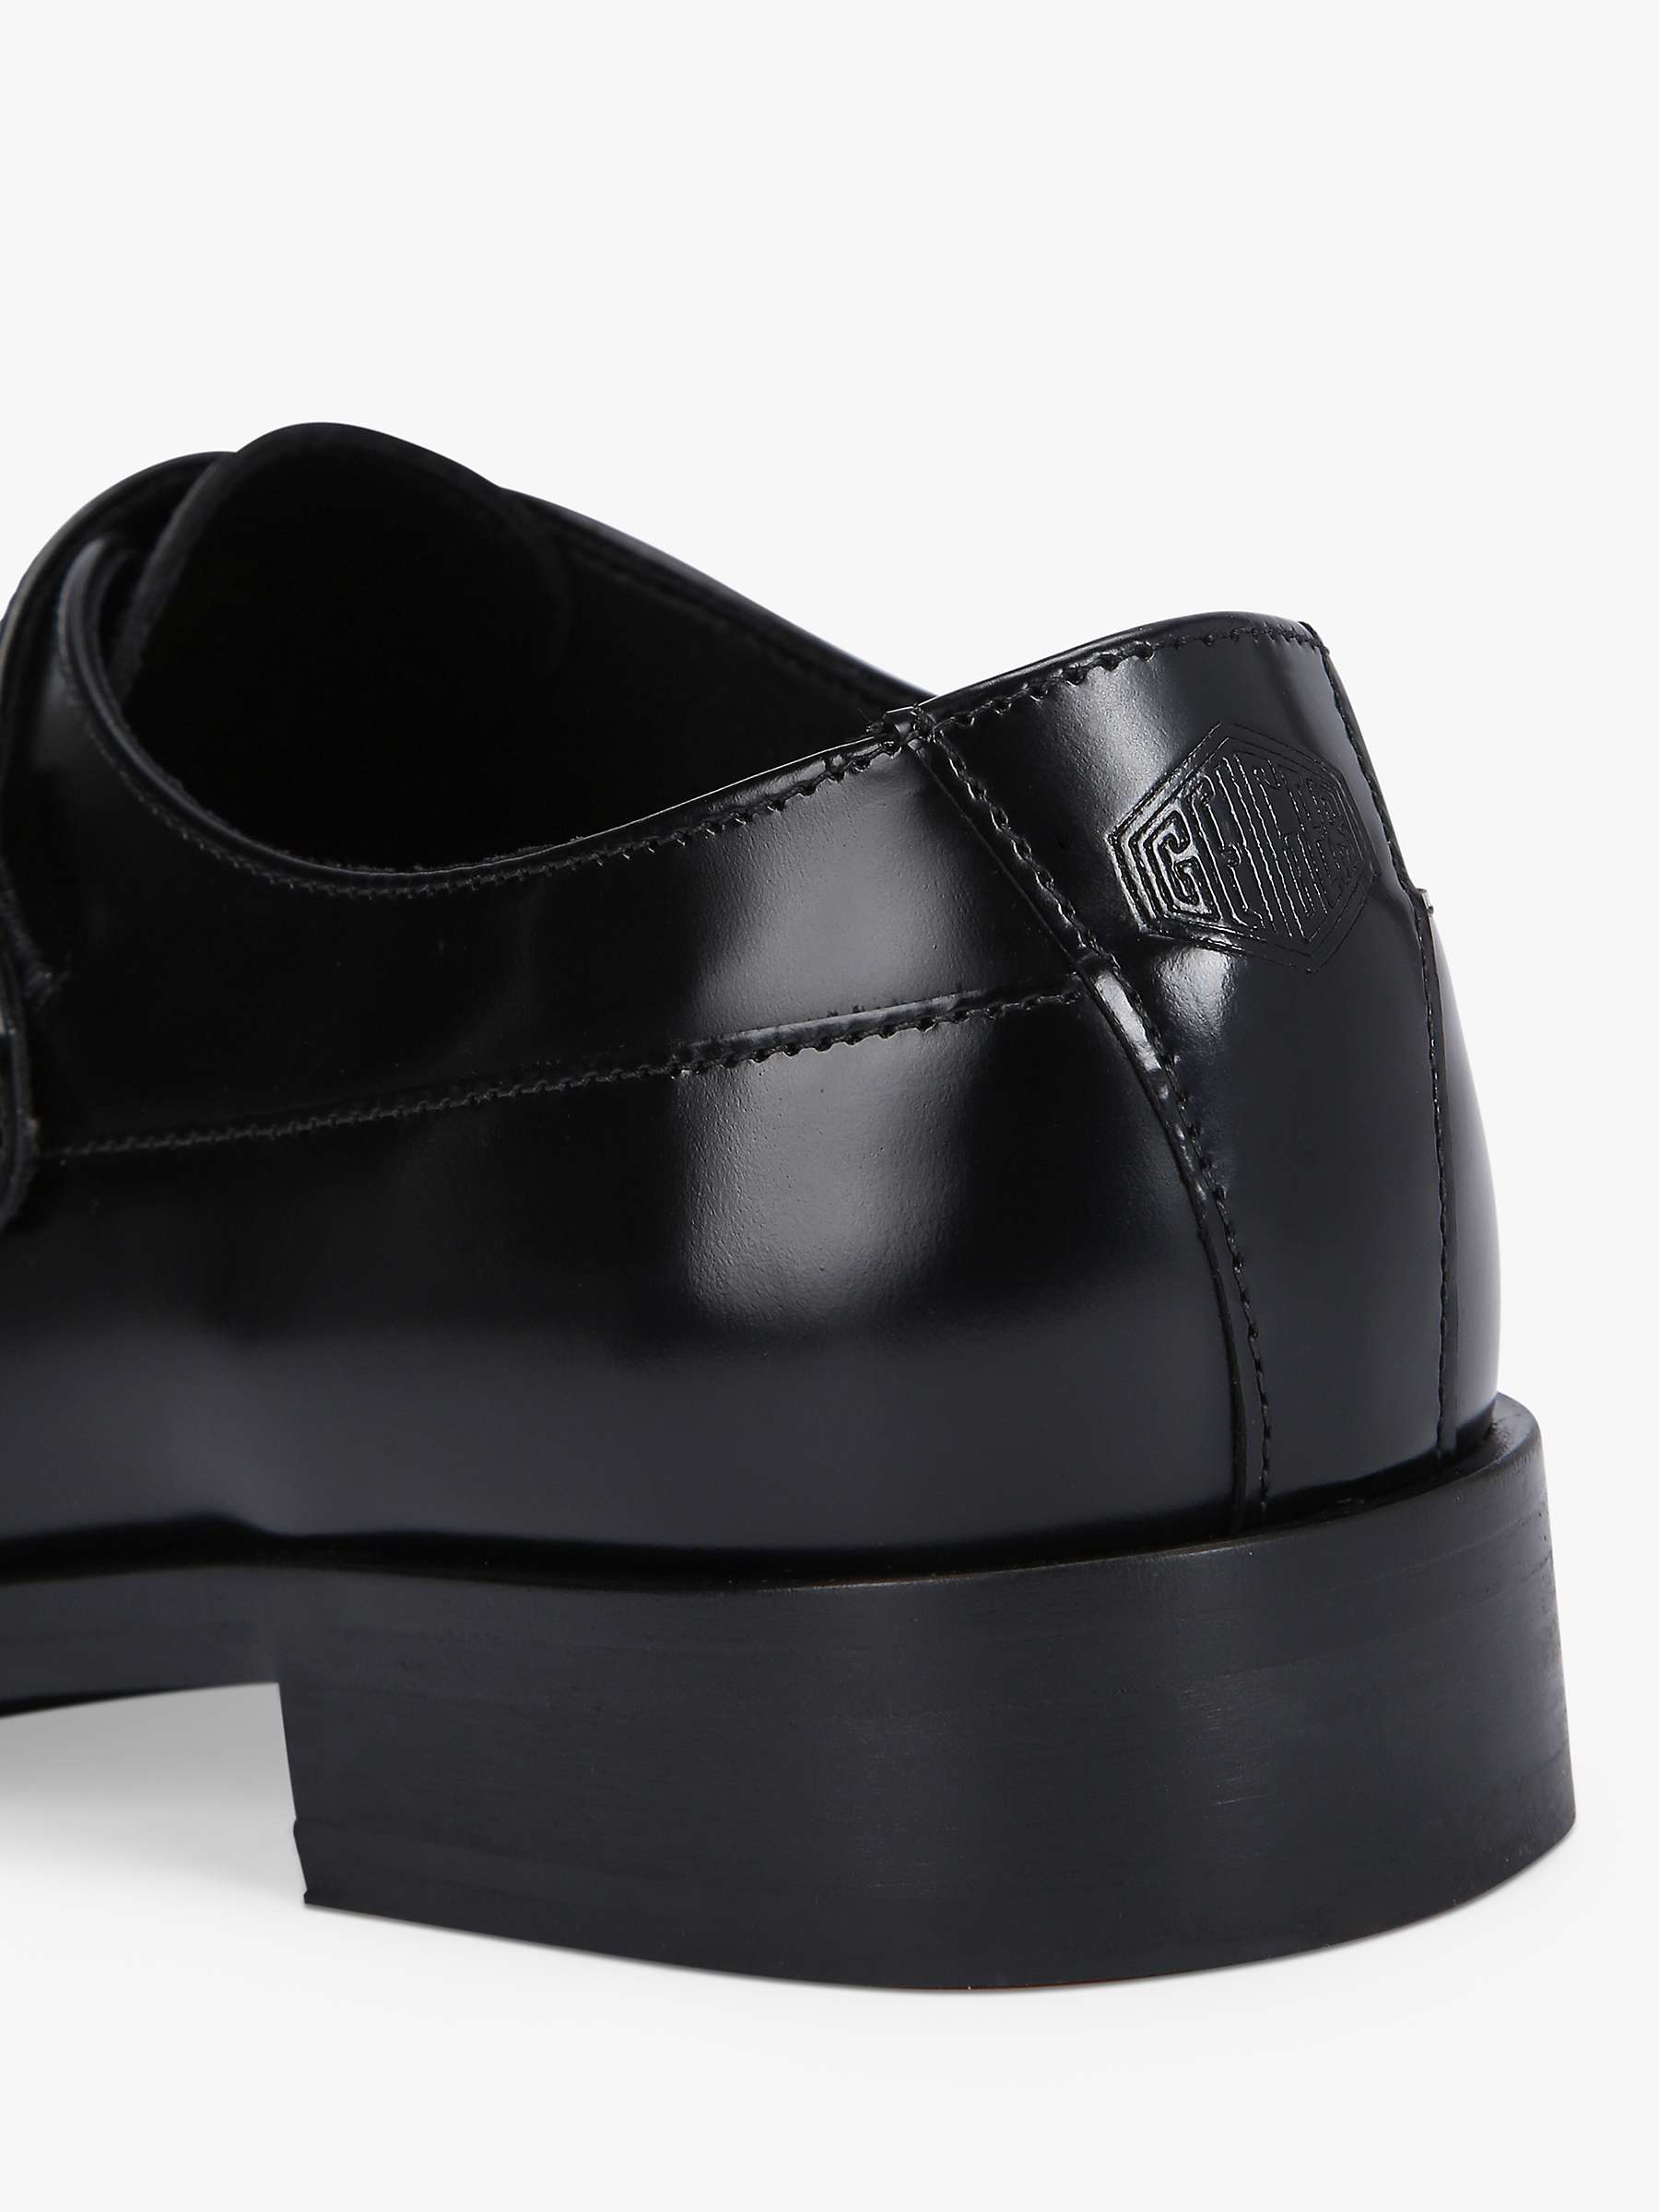 Buy Kurt Geiger London Hunter Monk Shoes, Black Online at johnlewis.com